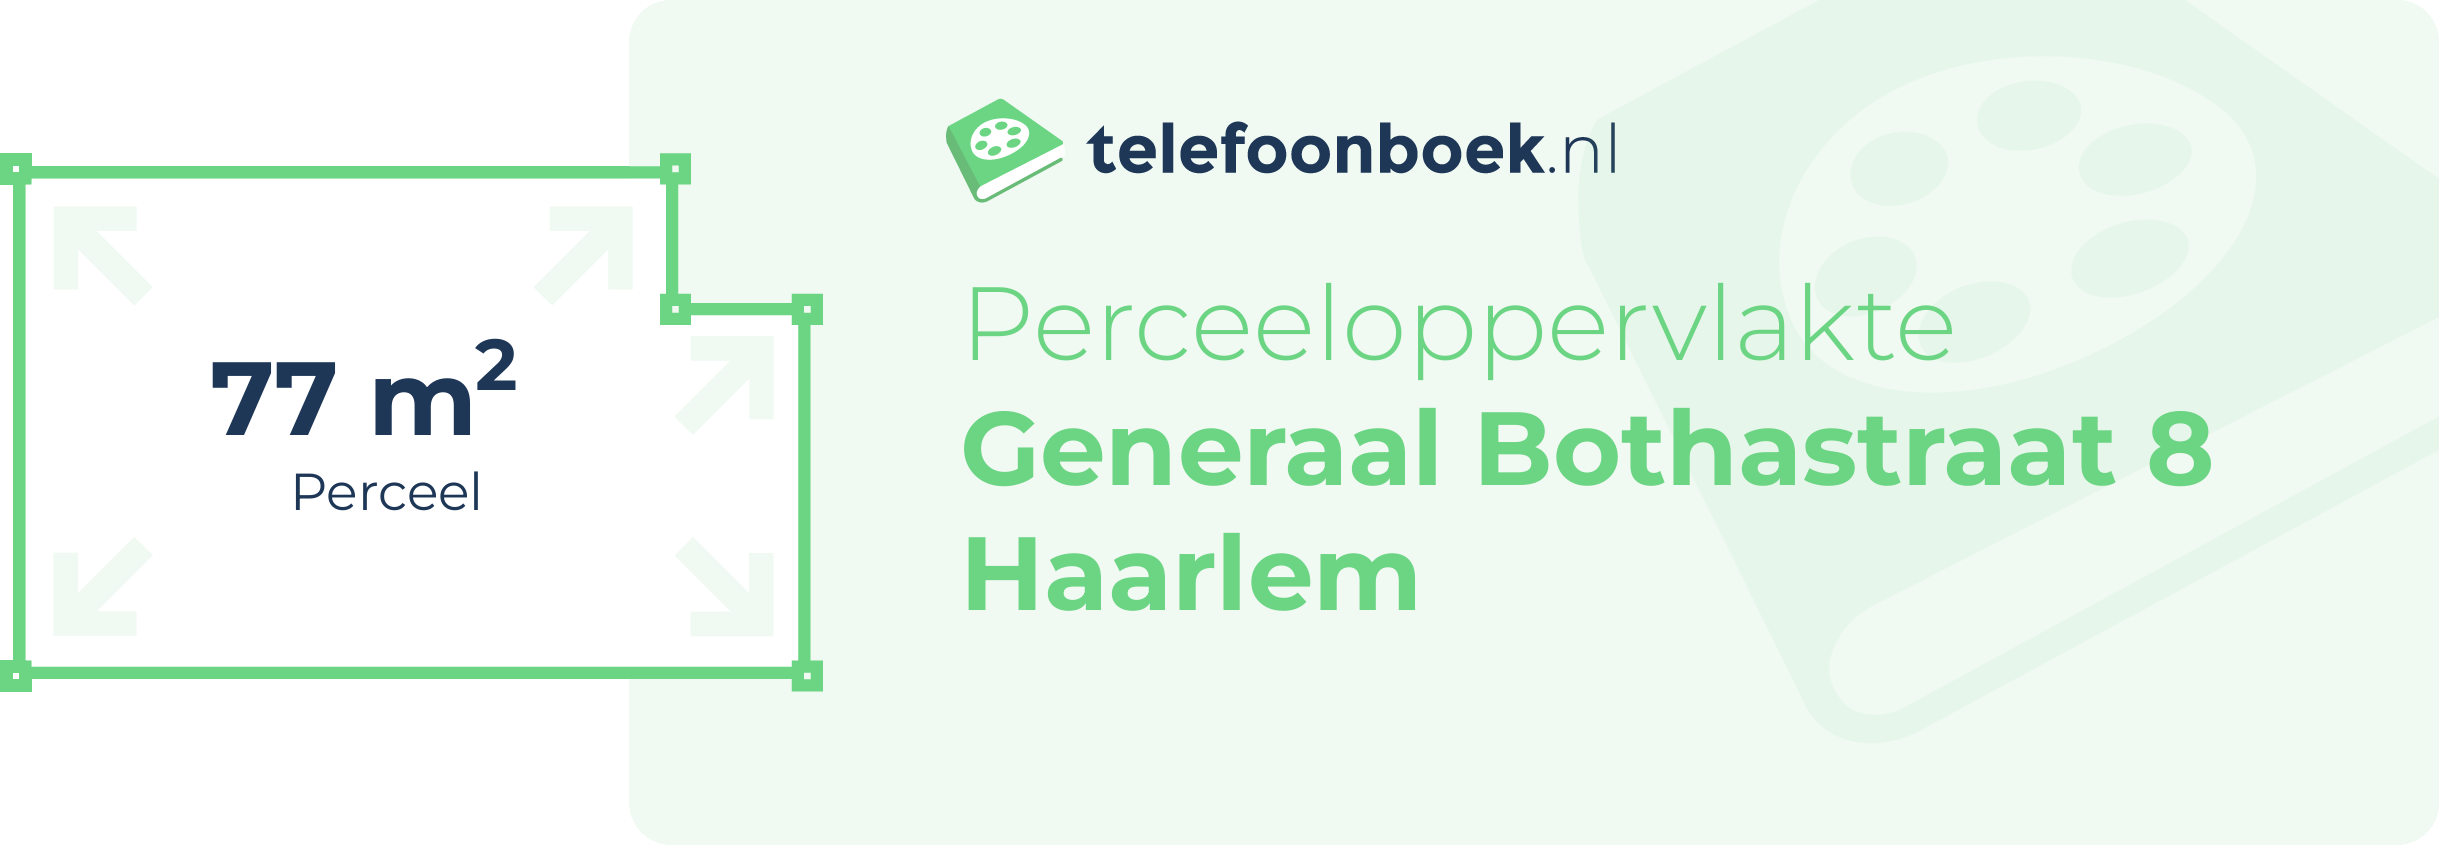 Perceeloppervlakte Generaal Bothastraat 8 Haarlem